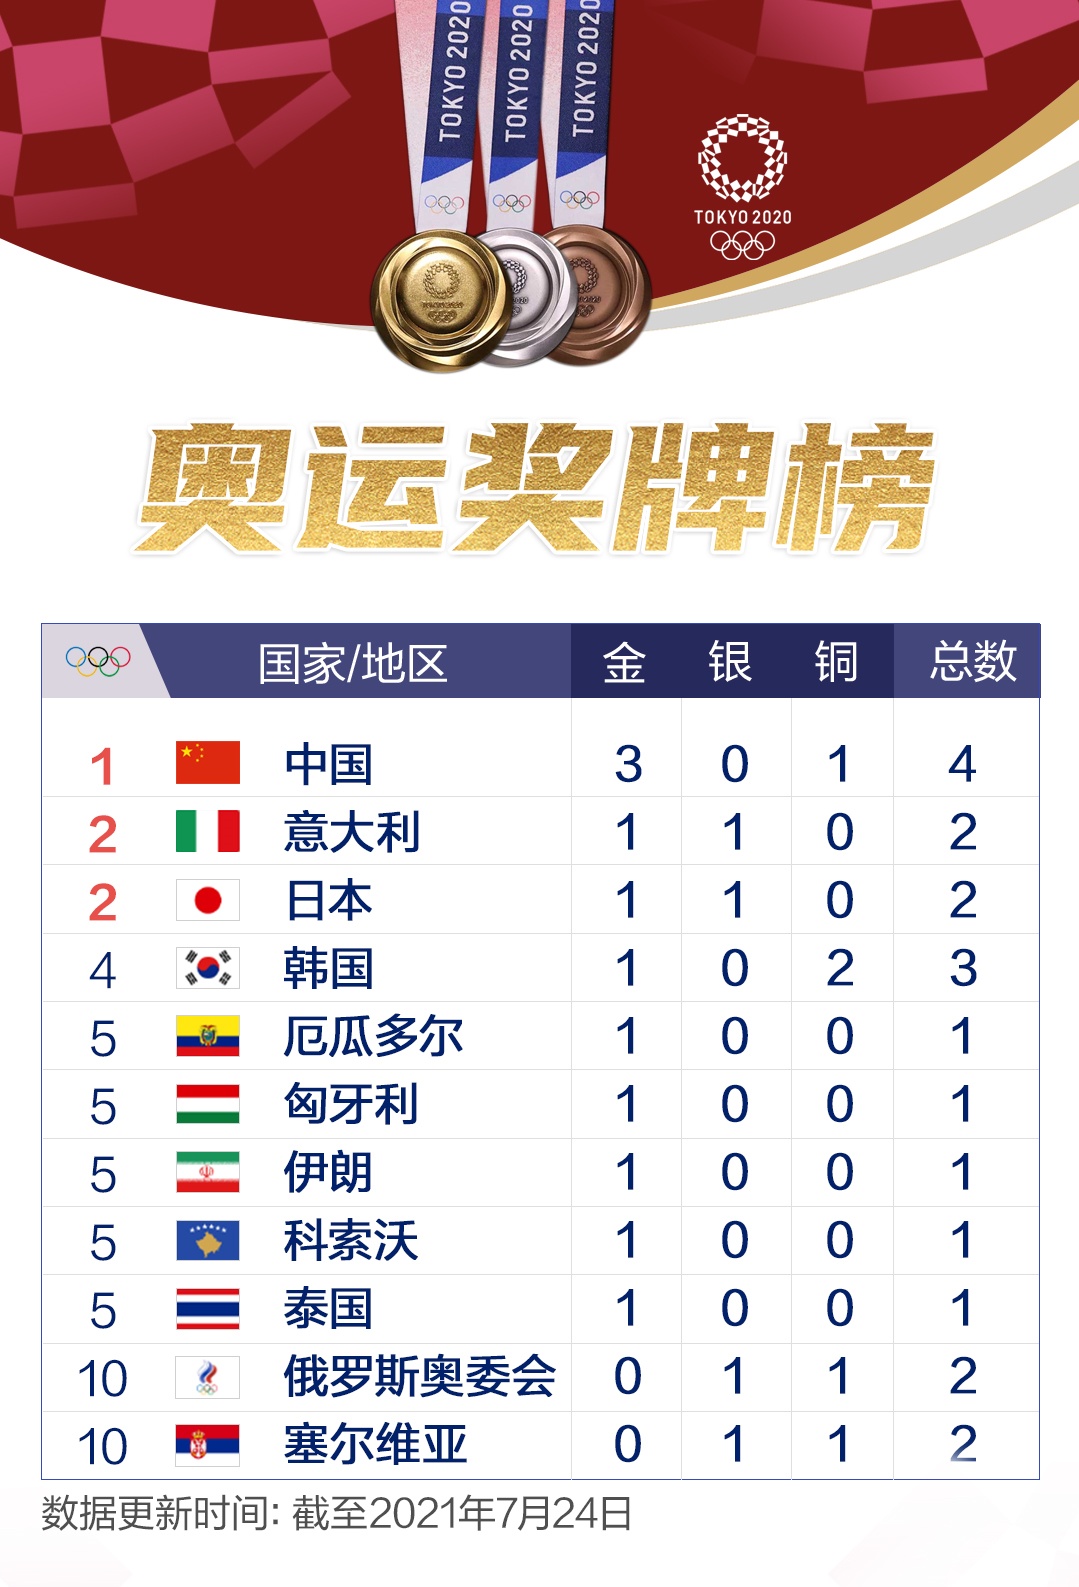 奥运奖牌榜来了东京奥运会第一日中国收获3金1铜